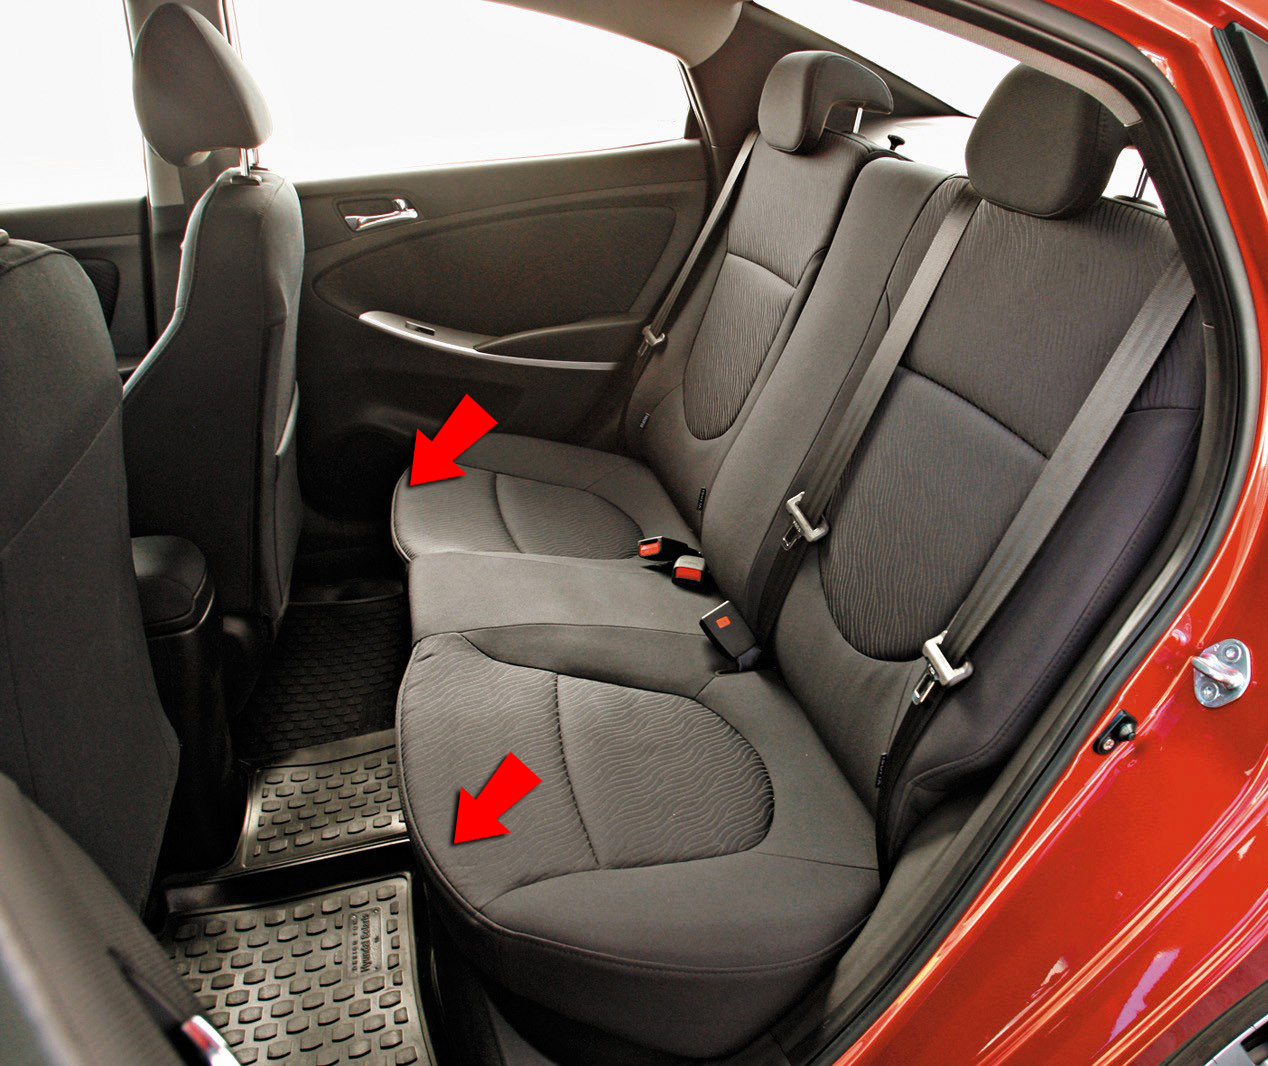 Поддеть сидушку заднего сиденья на автомобиле Hyundai Solaris 2010-2016